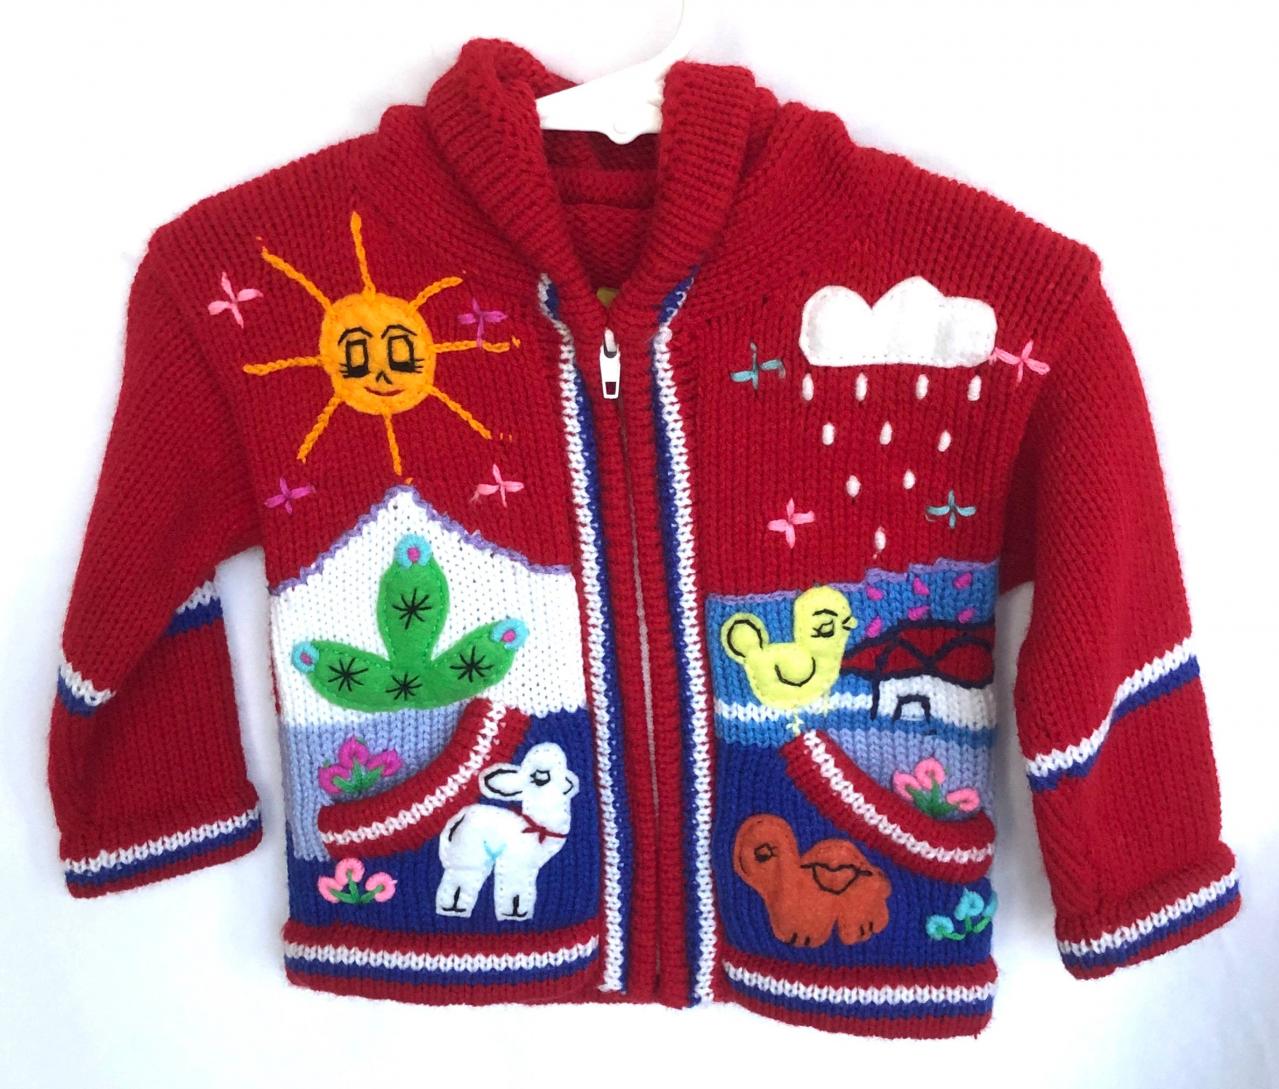 Size 0 Hooded Jacket, Girls Jacket, Red Jacket, Boys Jacket, Handwoven Jacket, Handmade Sweater, Long Sleeve Jacket, Toddler Jacket